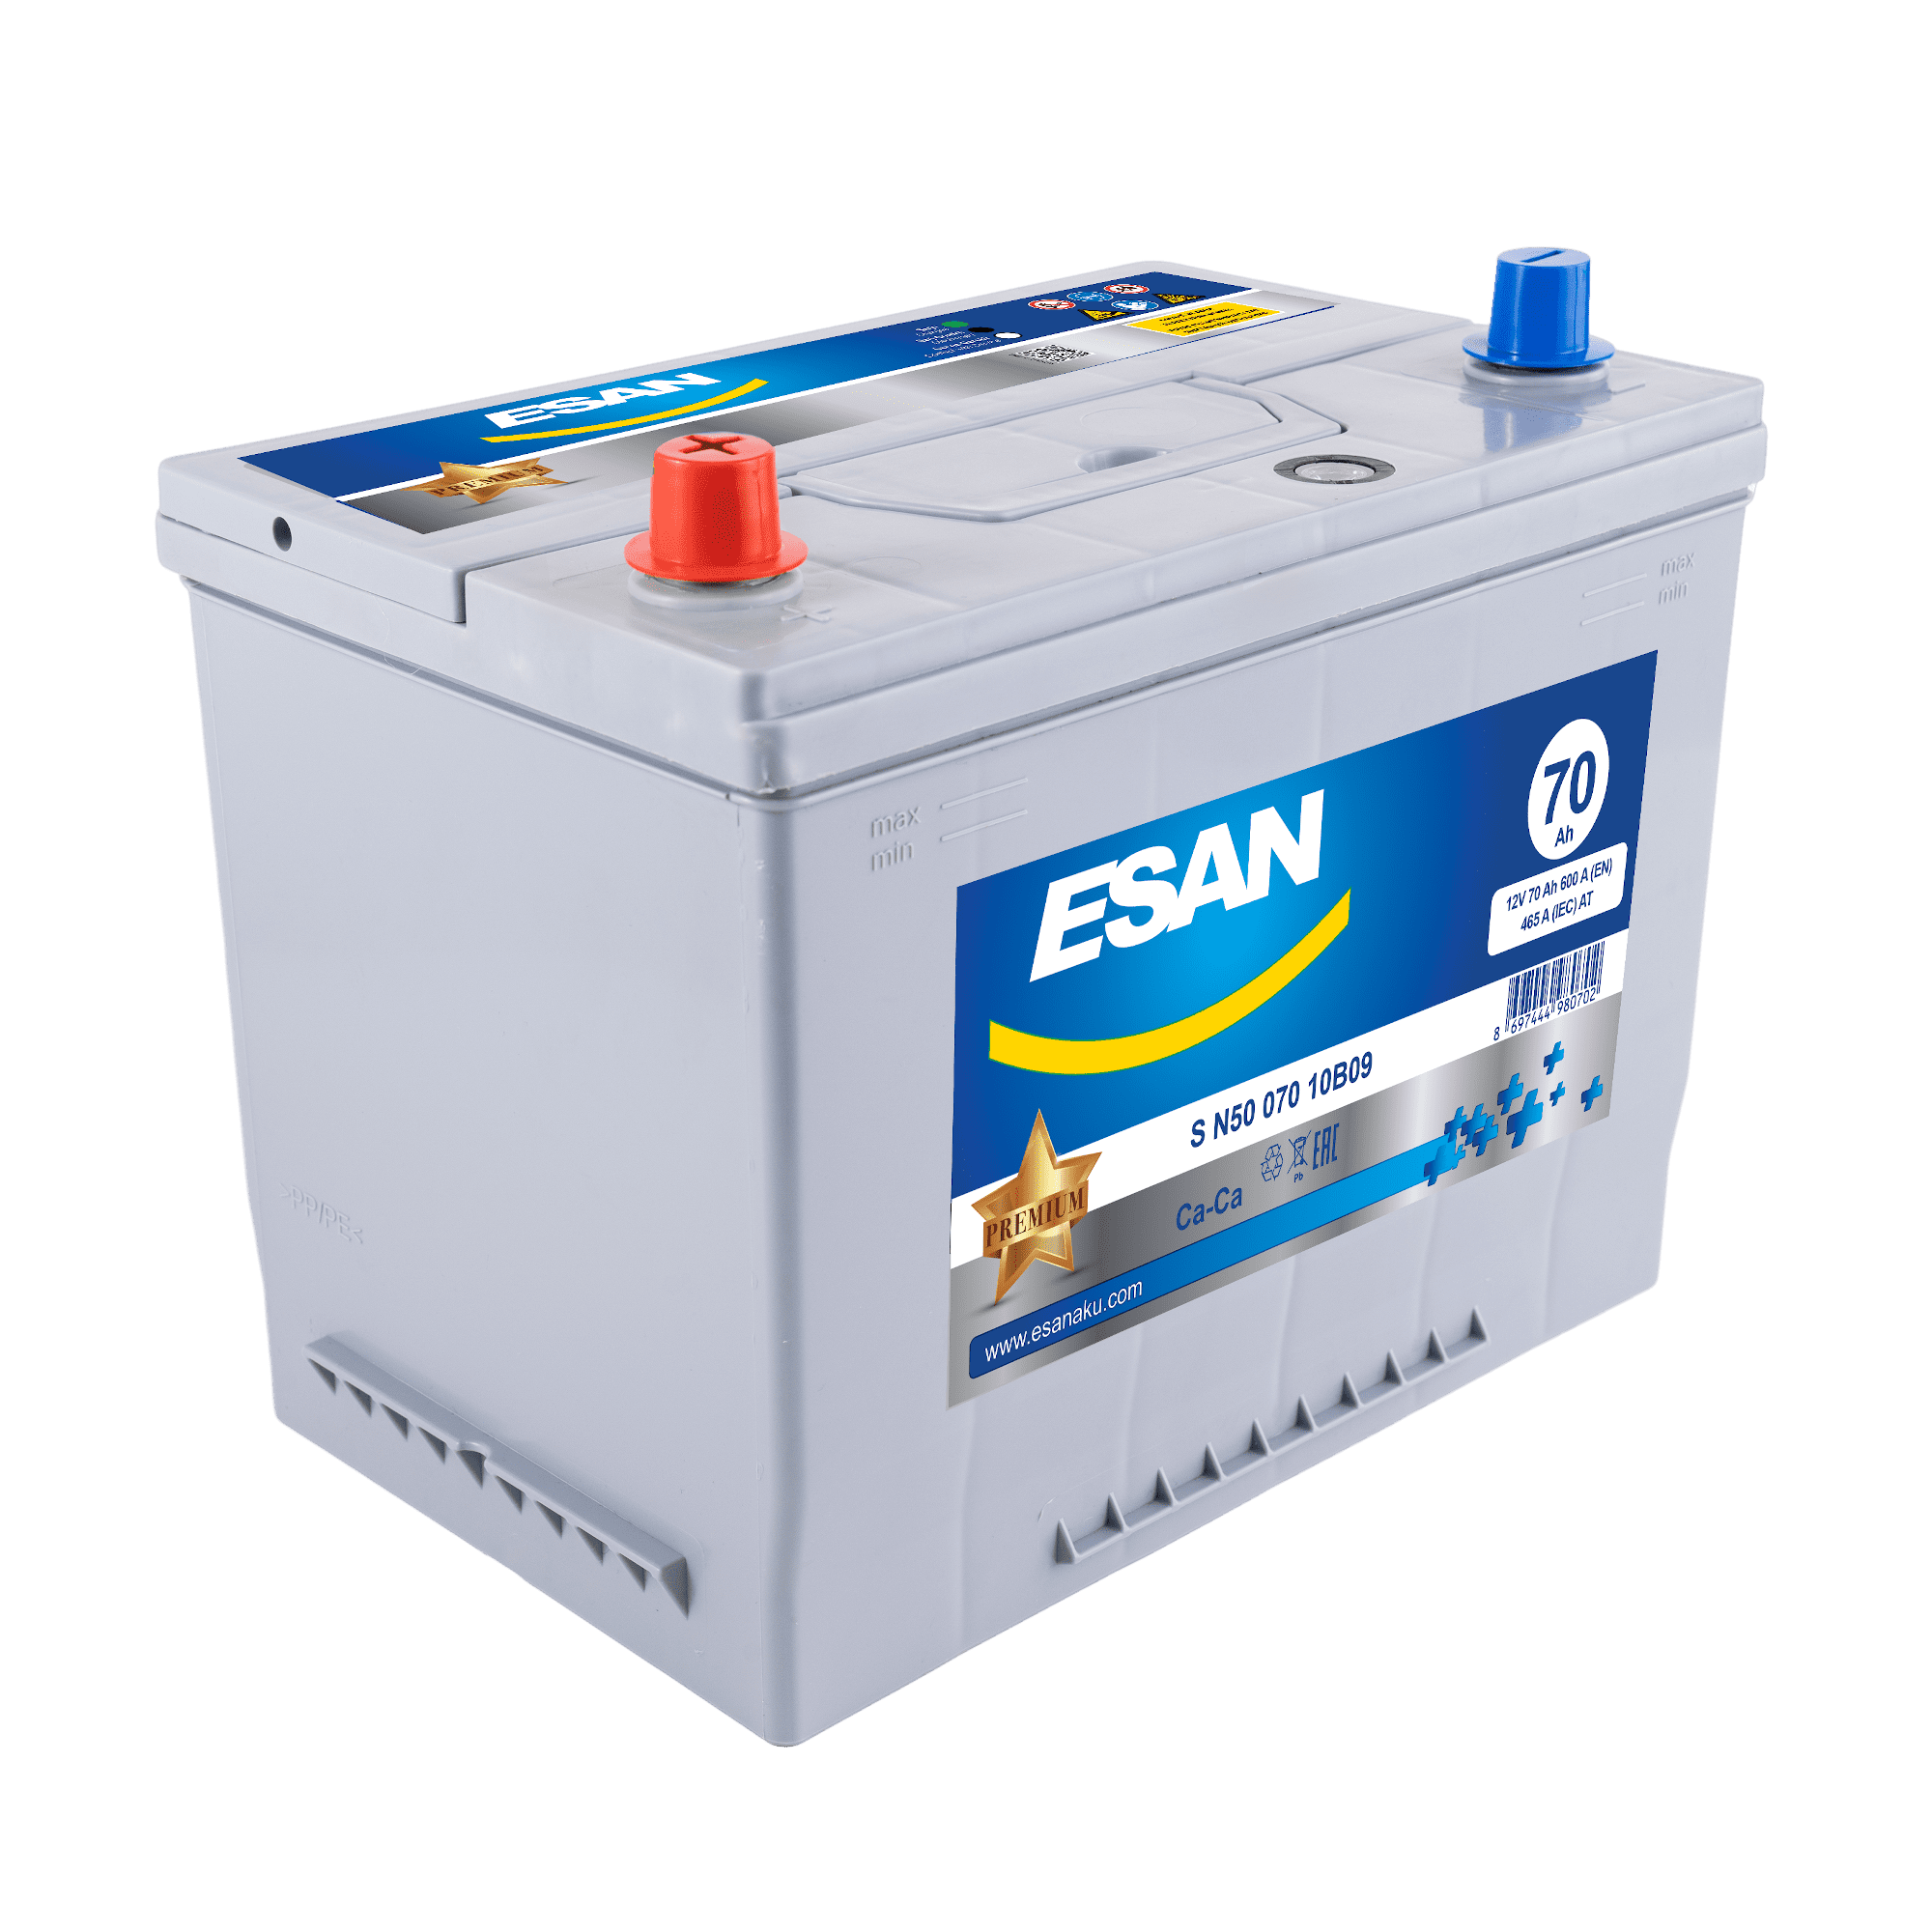 Автомобильная аккумуляторная батарея ESAN SMF S N50 070 10B09, 70 Ач, N50 JIS, 0/1